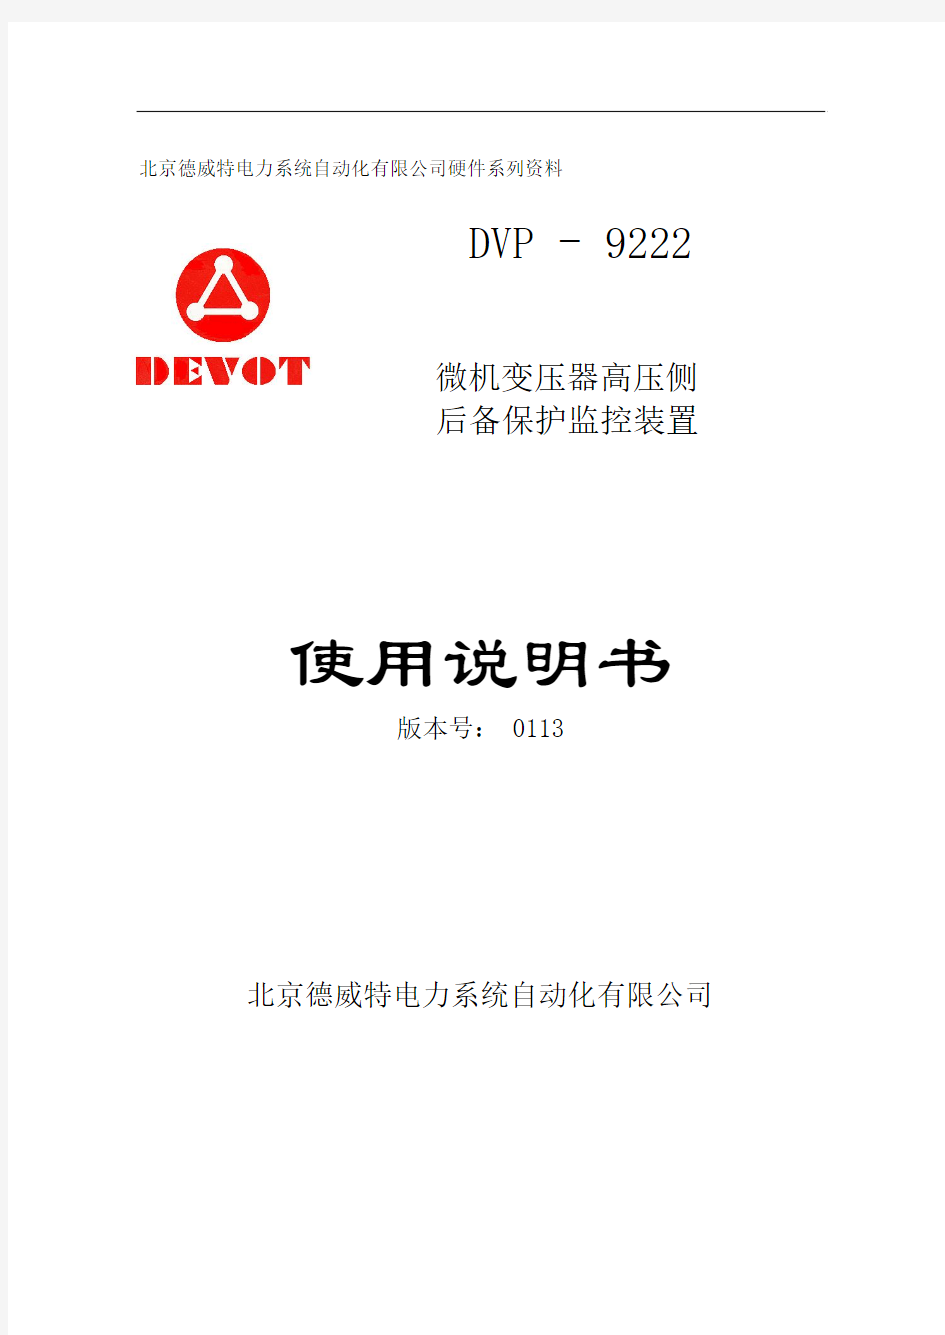 DVP-9222使用说明书